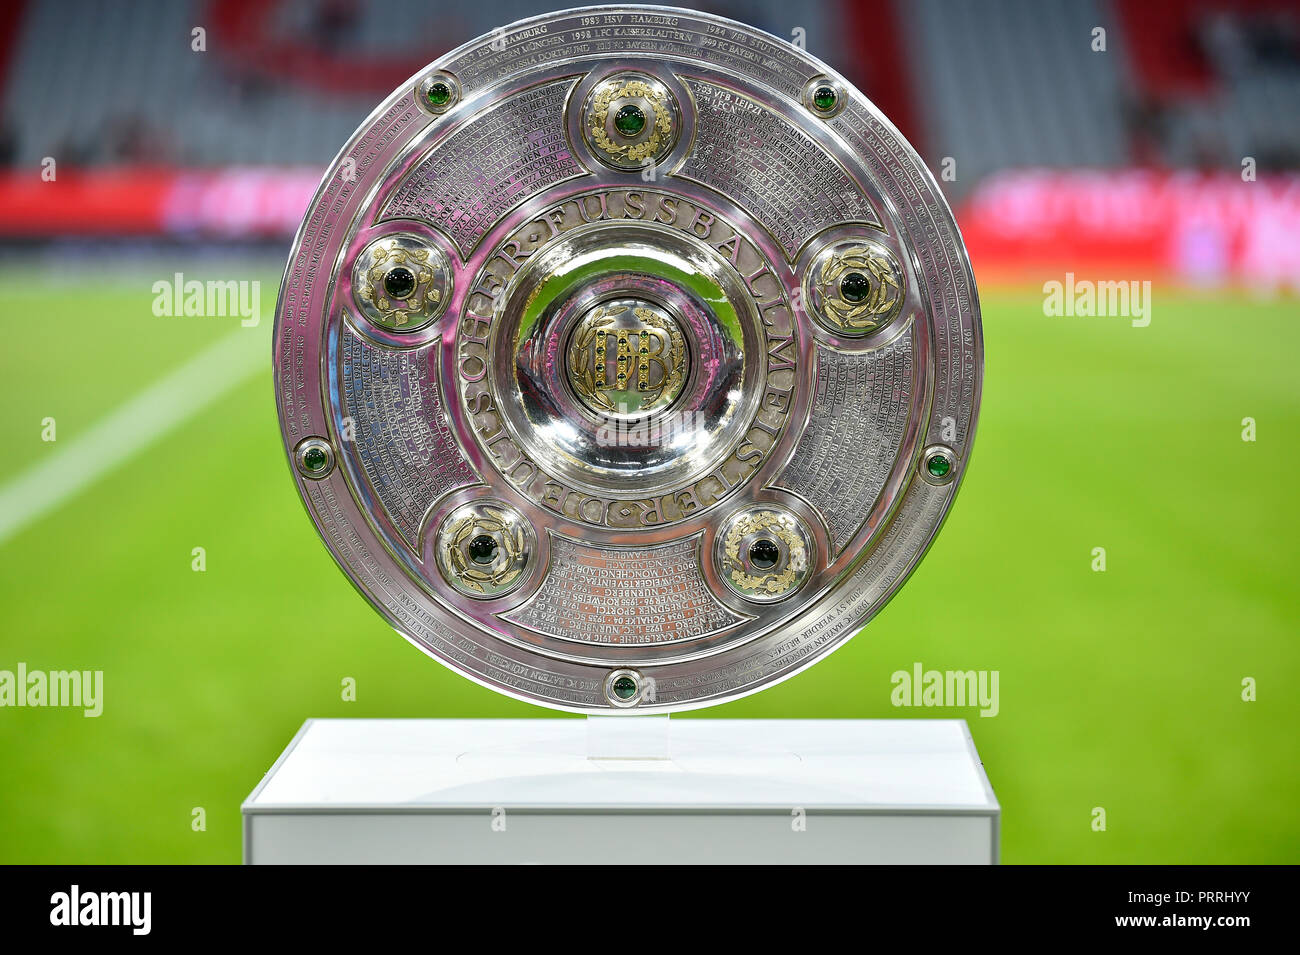 Trophée du championnat de la 1ère Bundesliga, Allianz-Arena, Munich, Bavière, Allemagne Banque D'Images